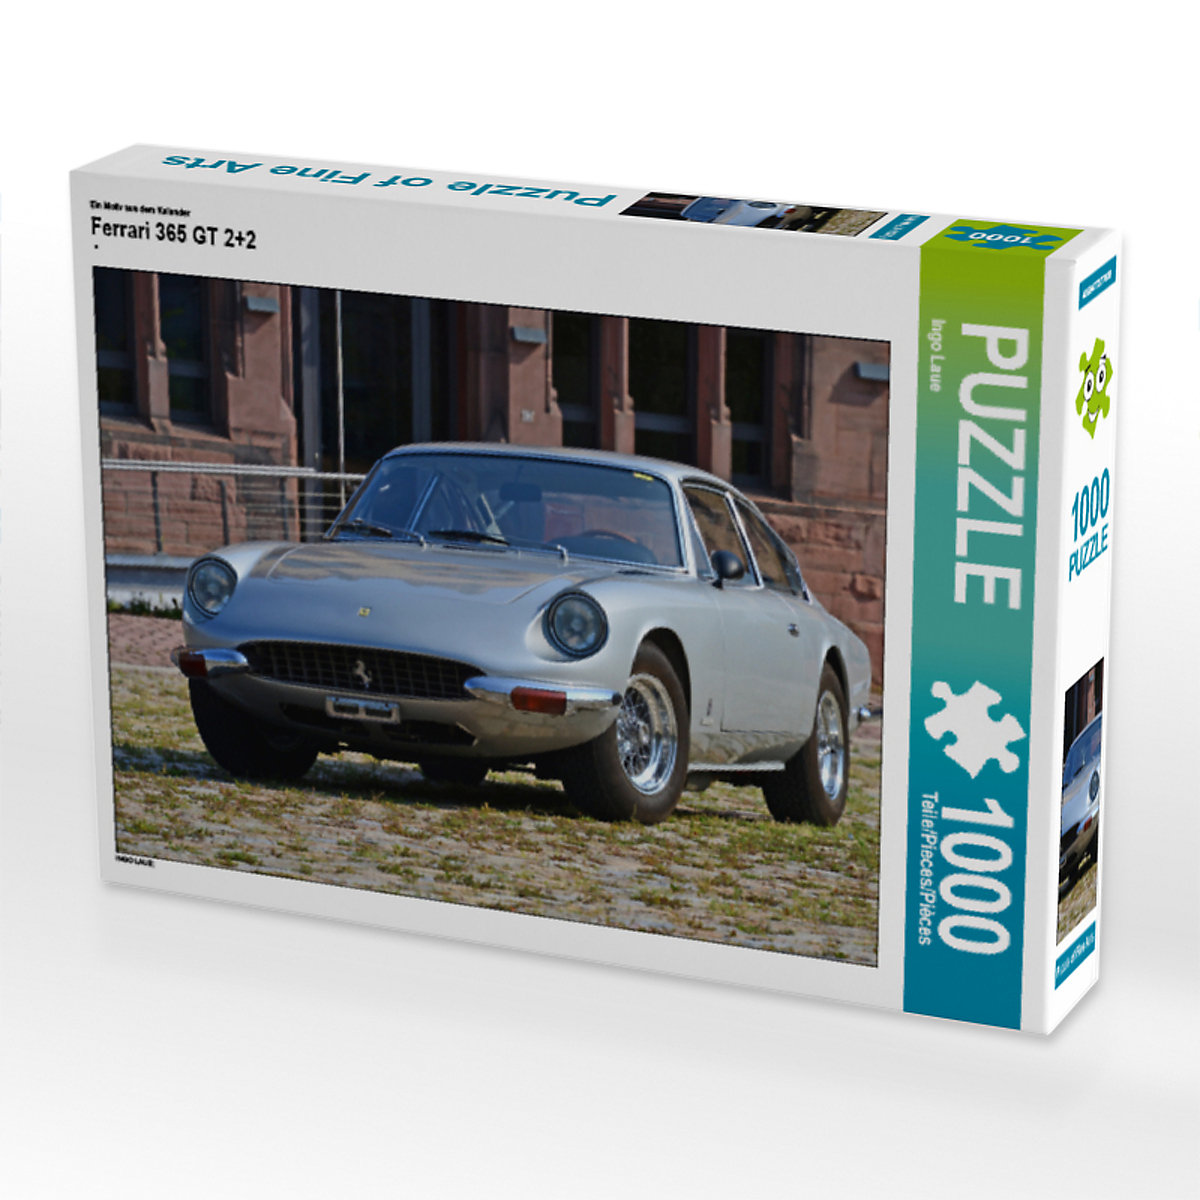 CALVENDO® Puzzle CALVENDO Puzzle Ferrari 365 GT 2+2 1000 Teile Foto-Puzzle für glückliche Stunden